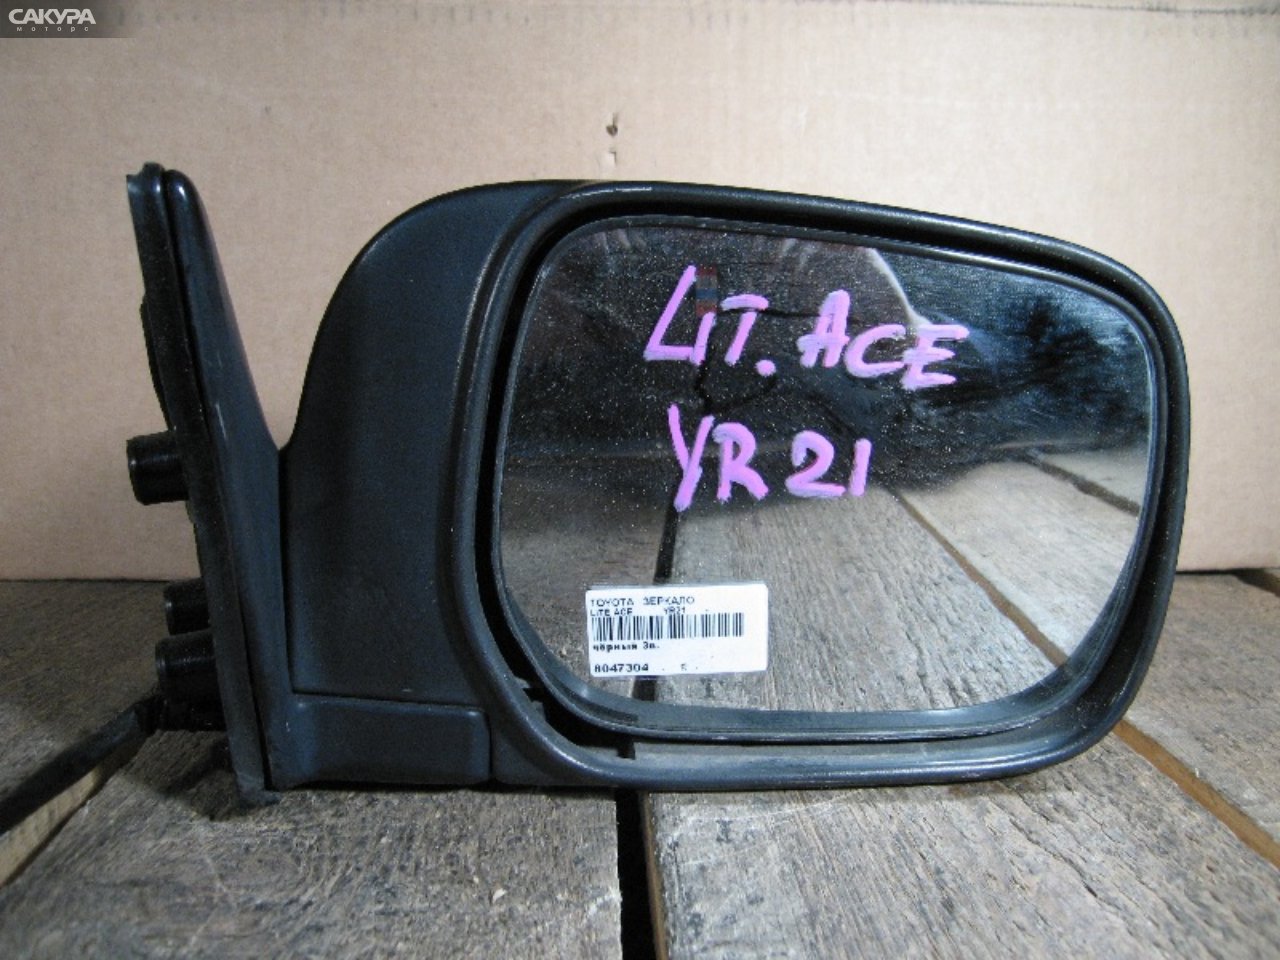 Зеркало боковое правое Toyota Liteace 3Y-EU: купить в Сакура Абакан.